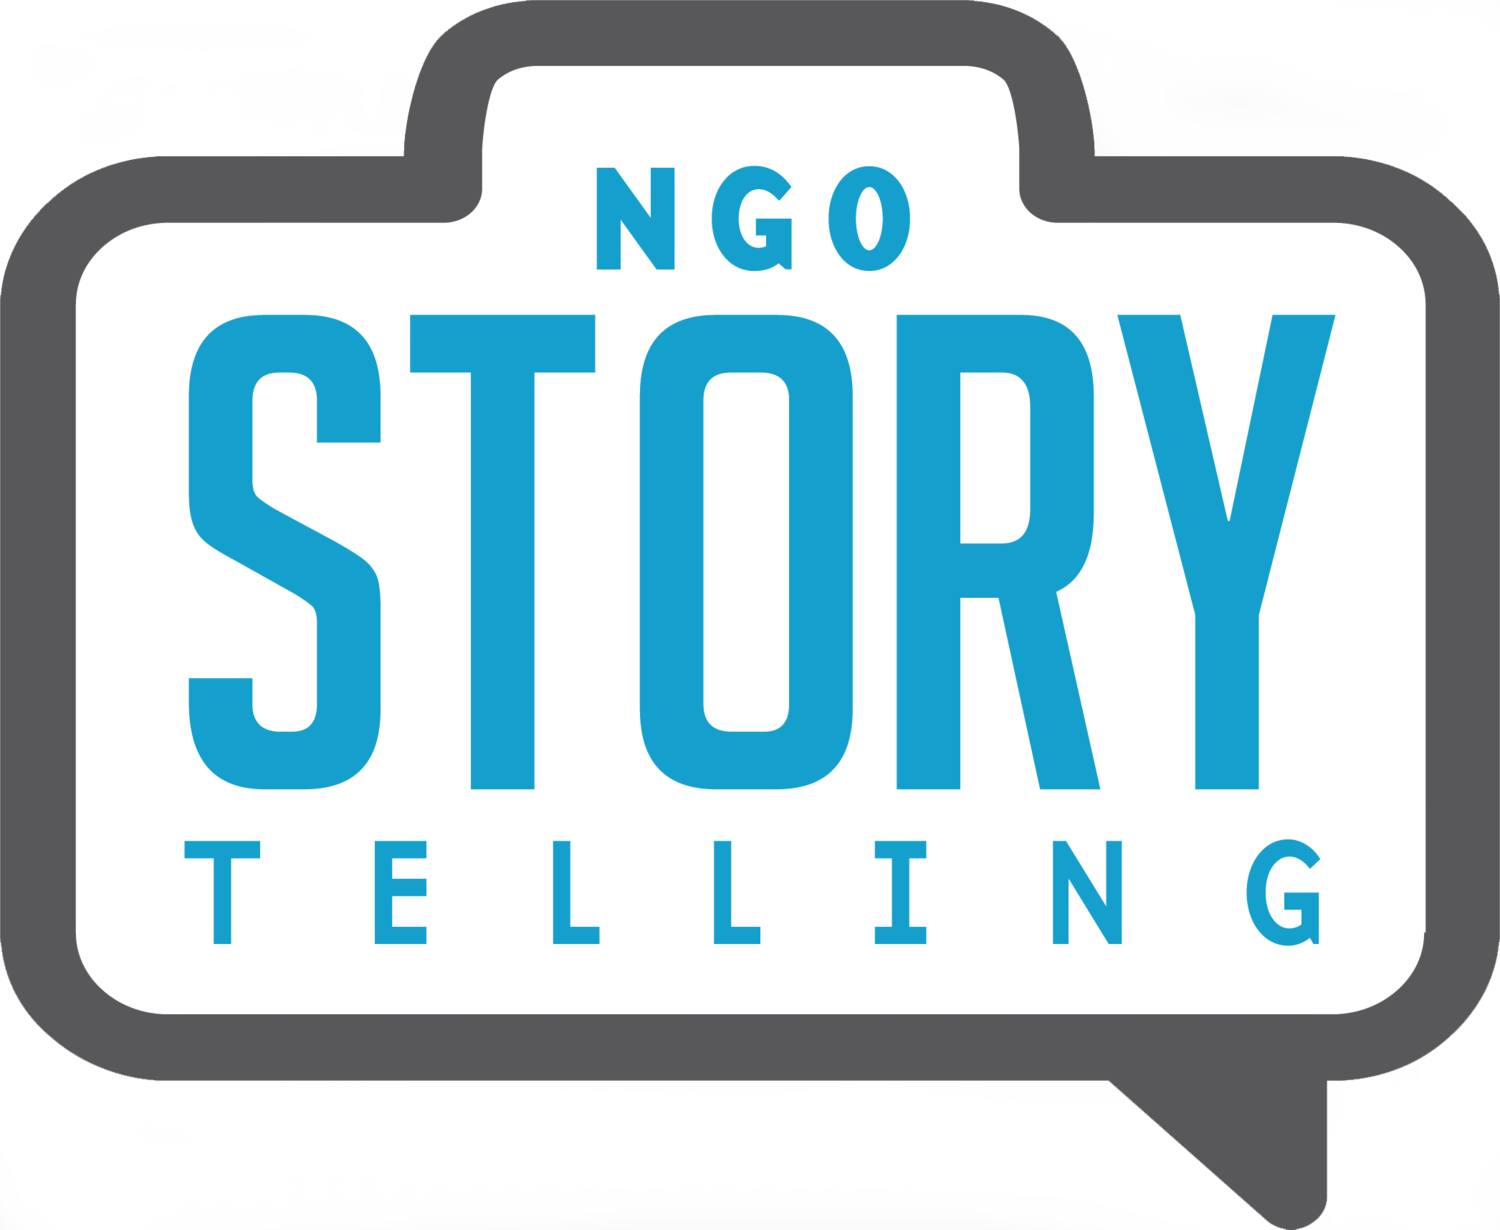 NGO Storytelling